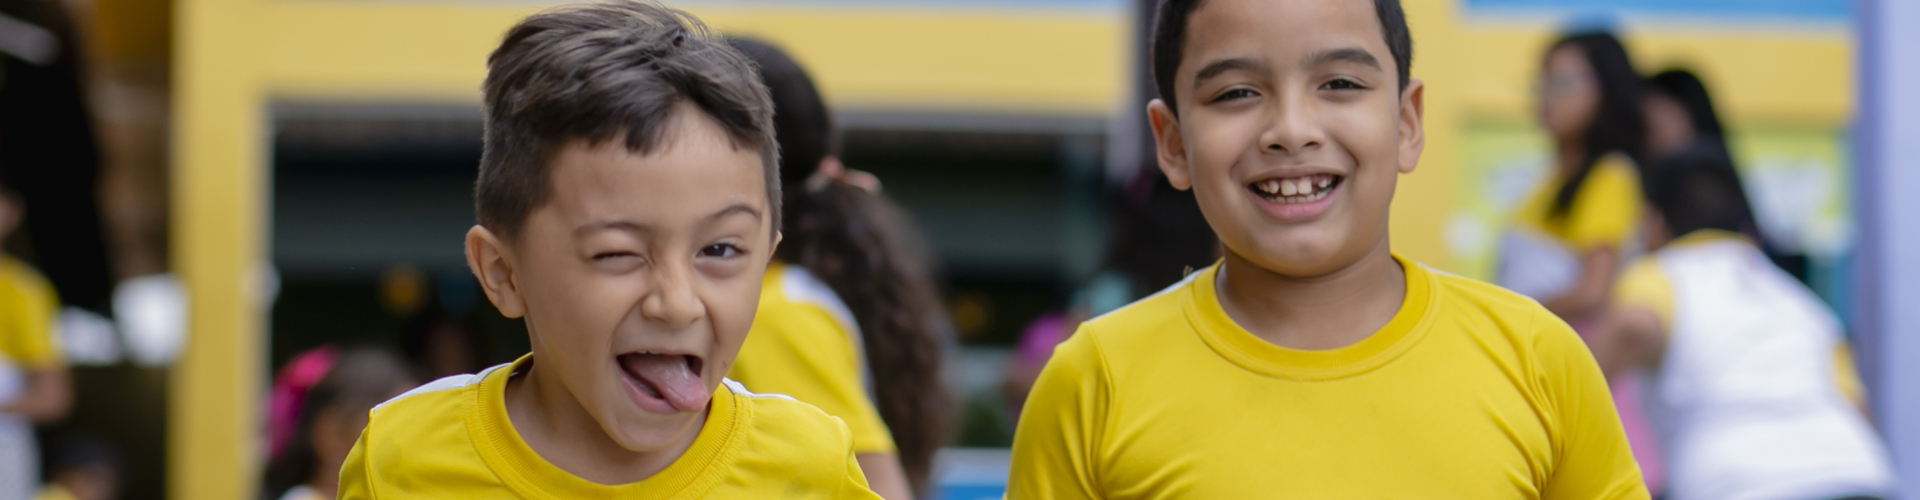 Um grupo de crianças com camisas amarelas posa para uma foto durante Pesquisas sobre Criatividade e Pensamento Crítico.